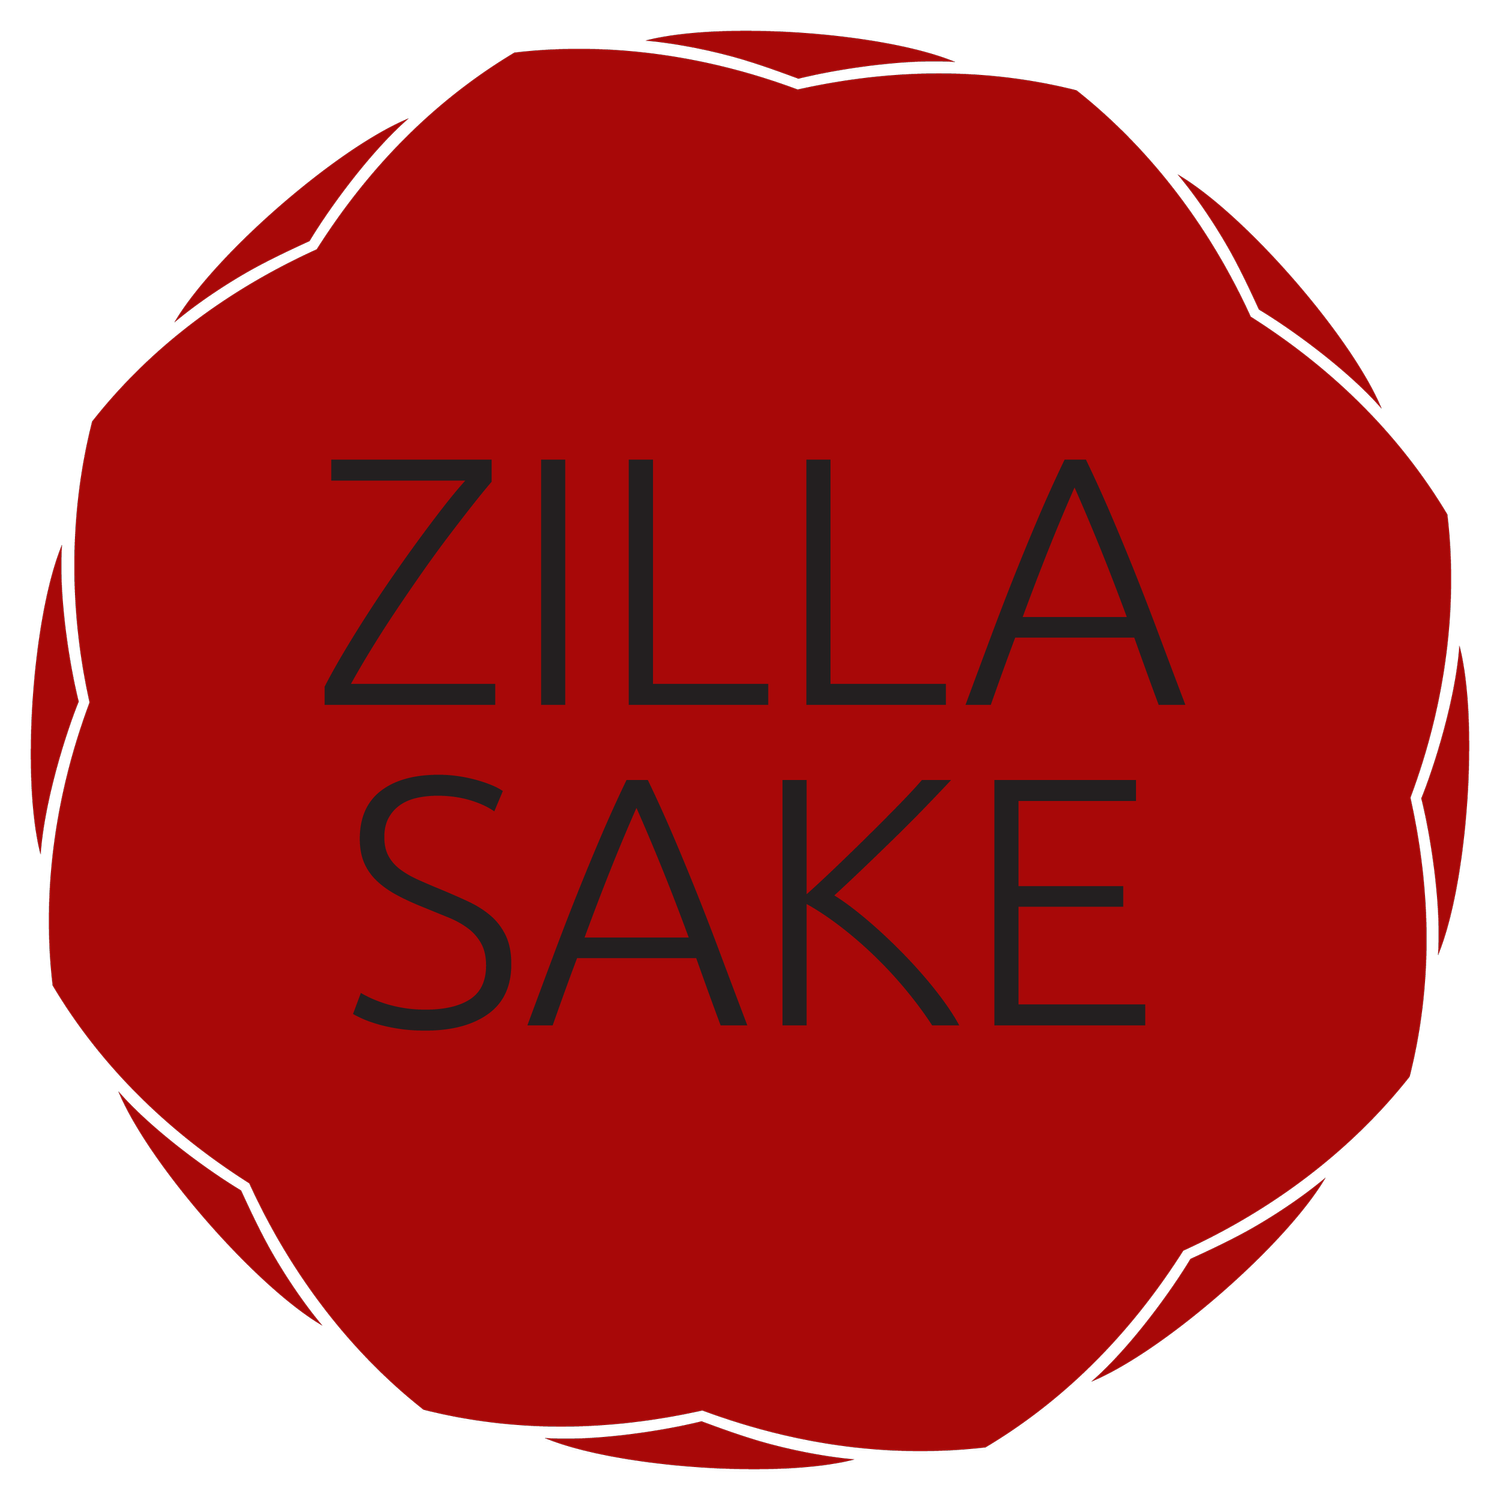 Zilla Sake